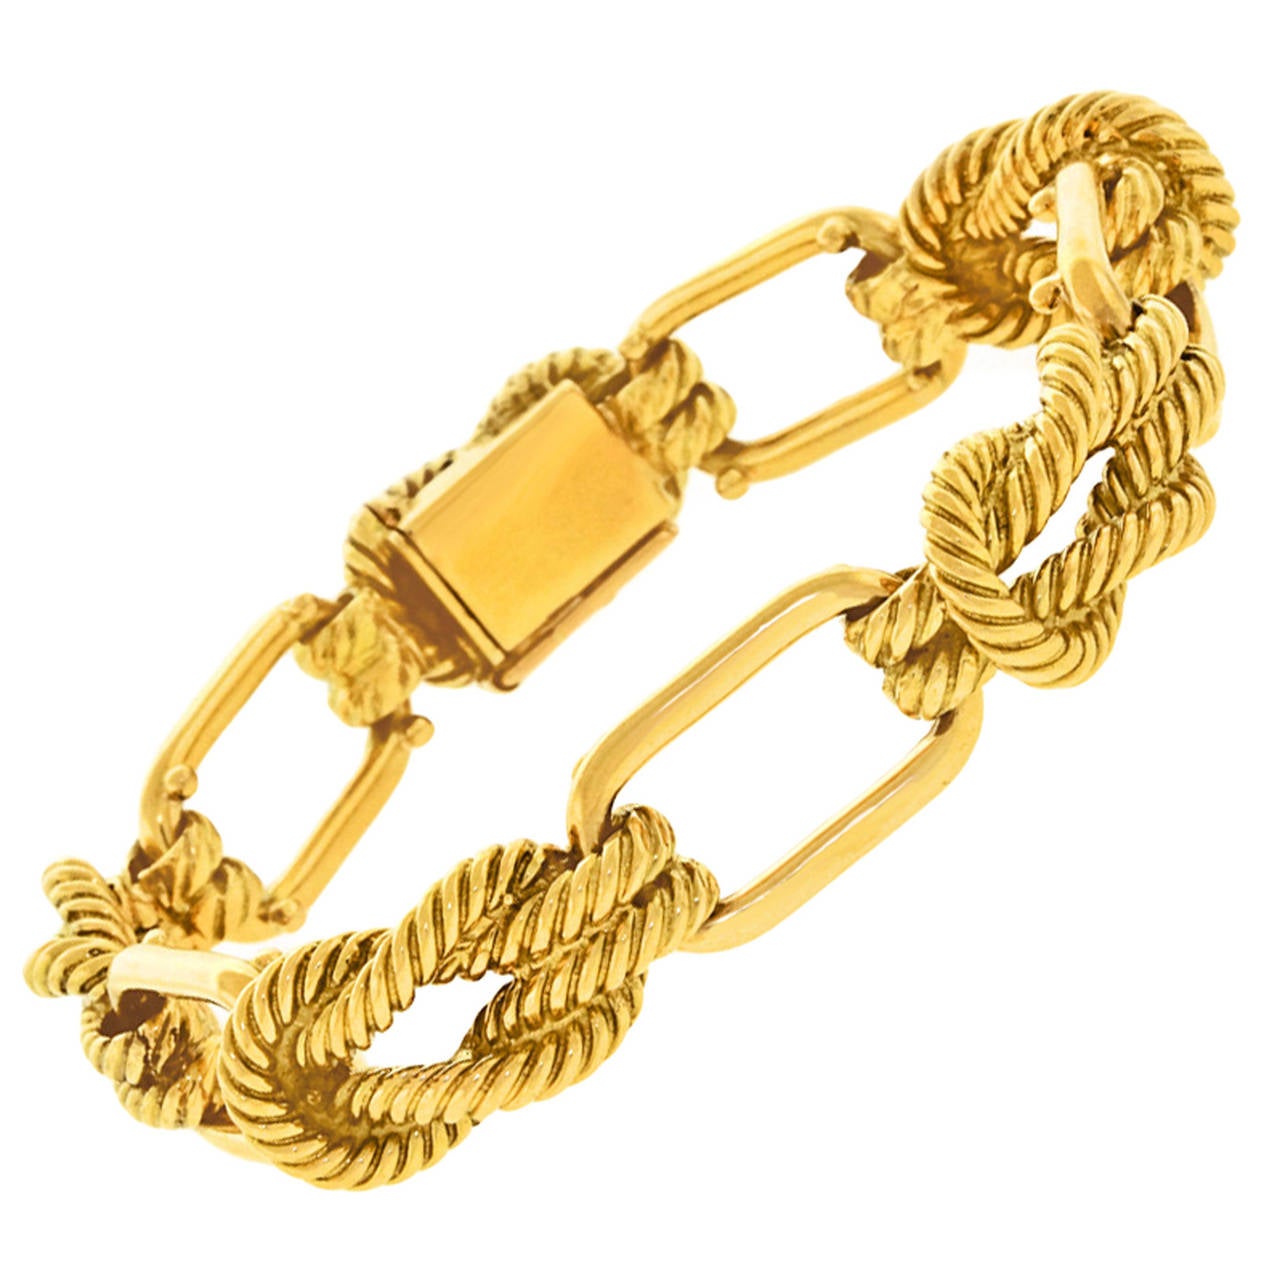 Tiffany & Co. France Chic Gold Knot Bracelet